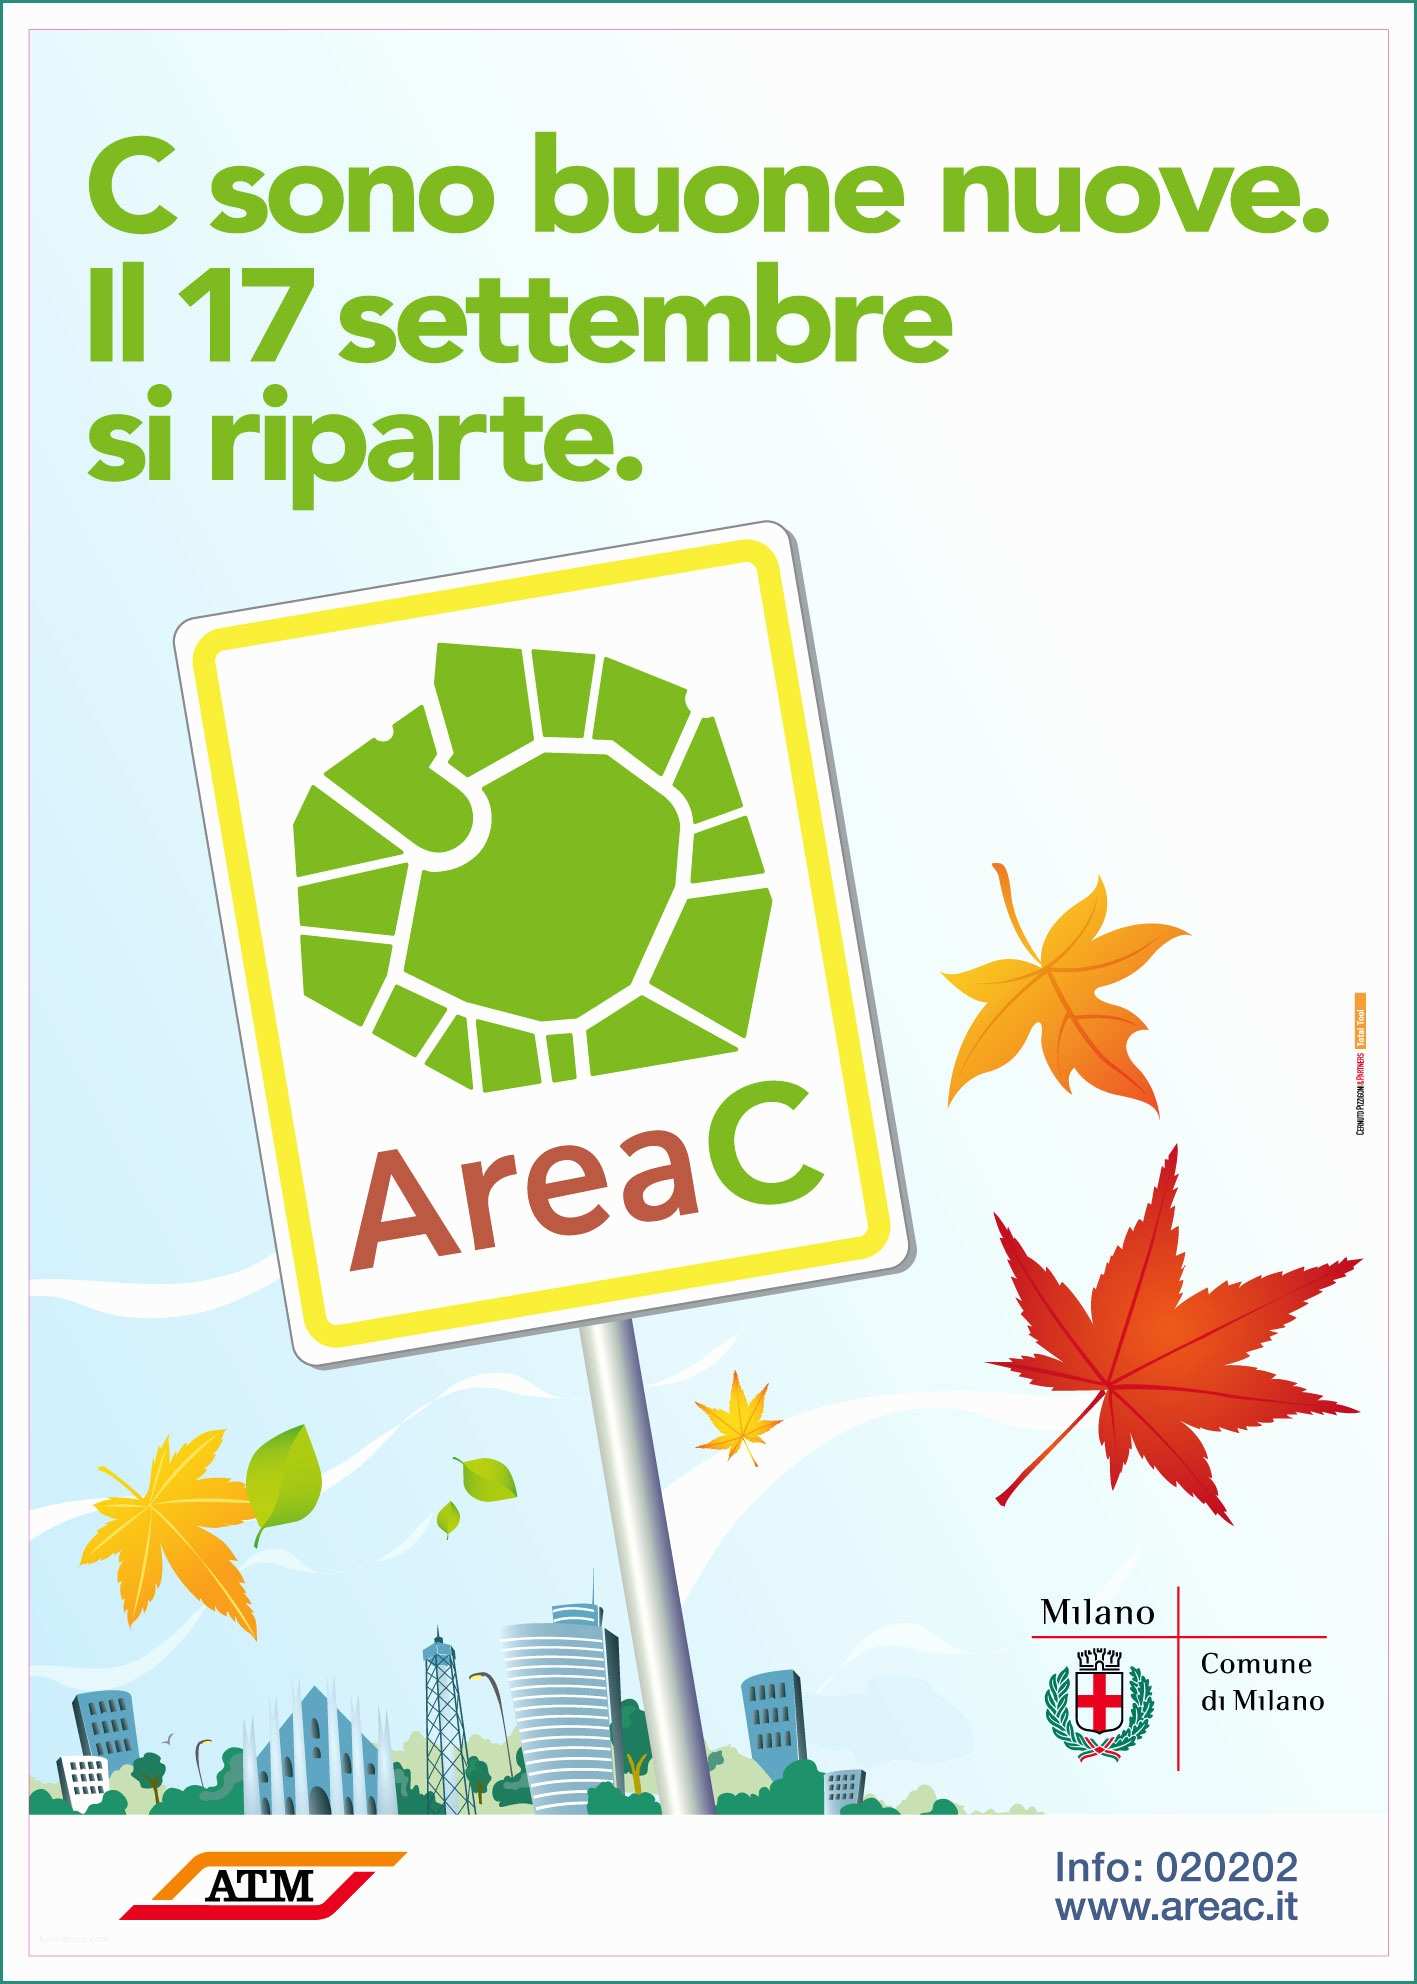 Amsa Ingombranti Milano E area C sospesa Dal Consiglio Di Stato Riavviata Il 17 09 2012